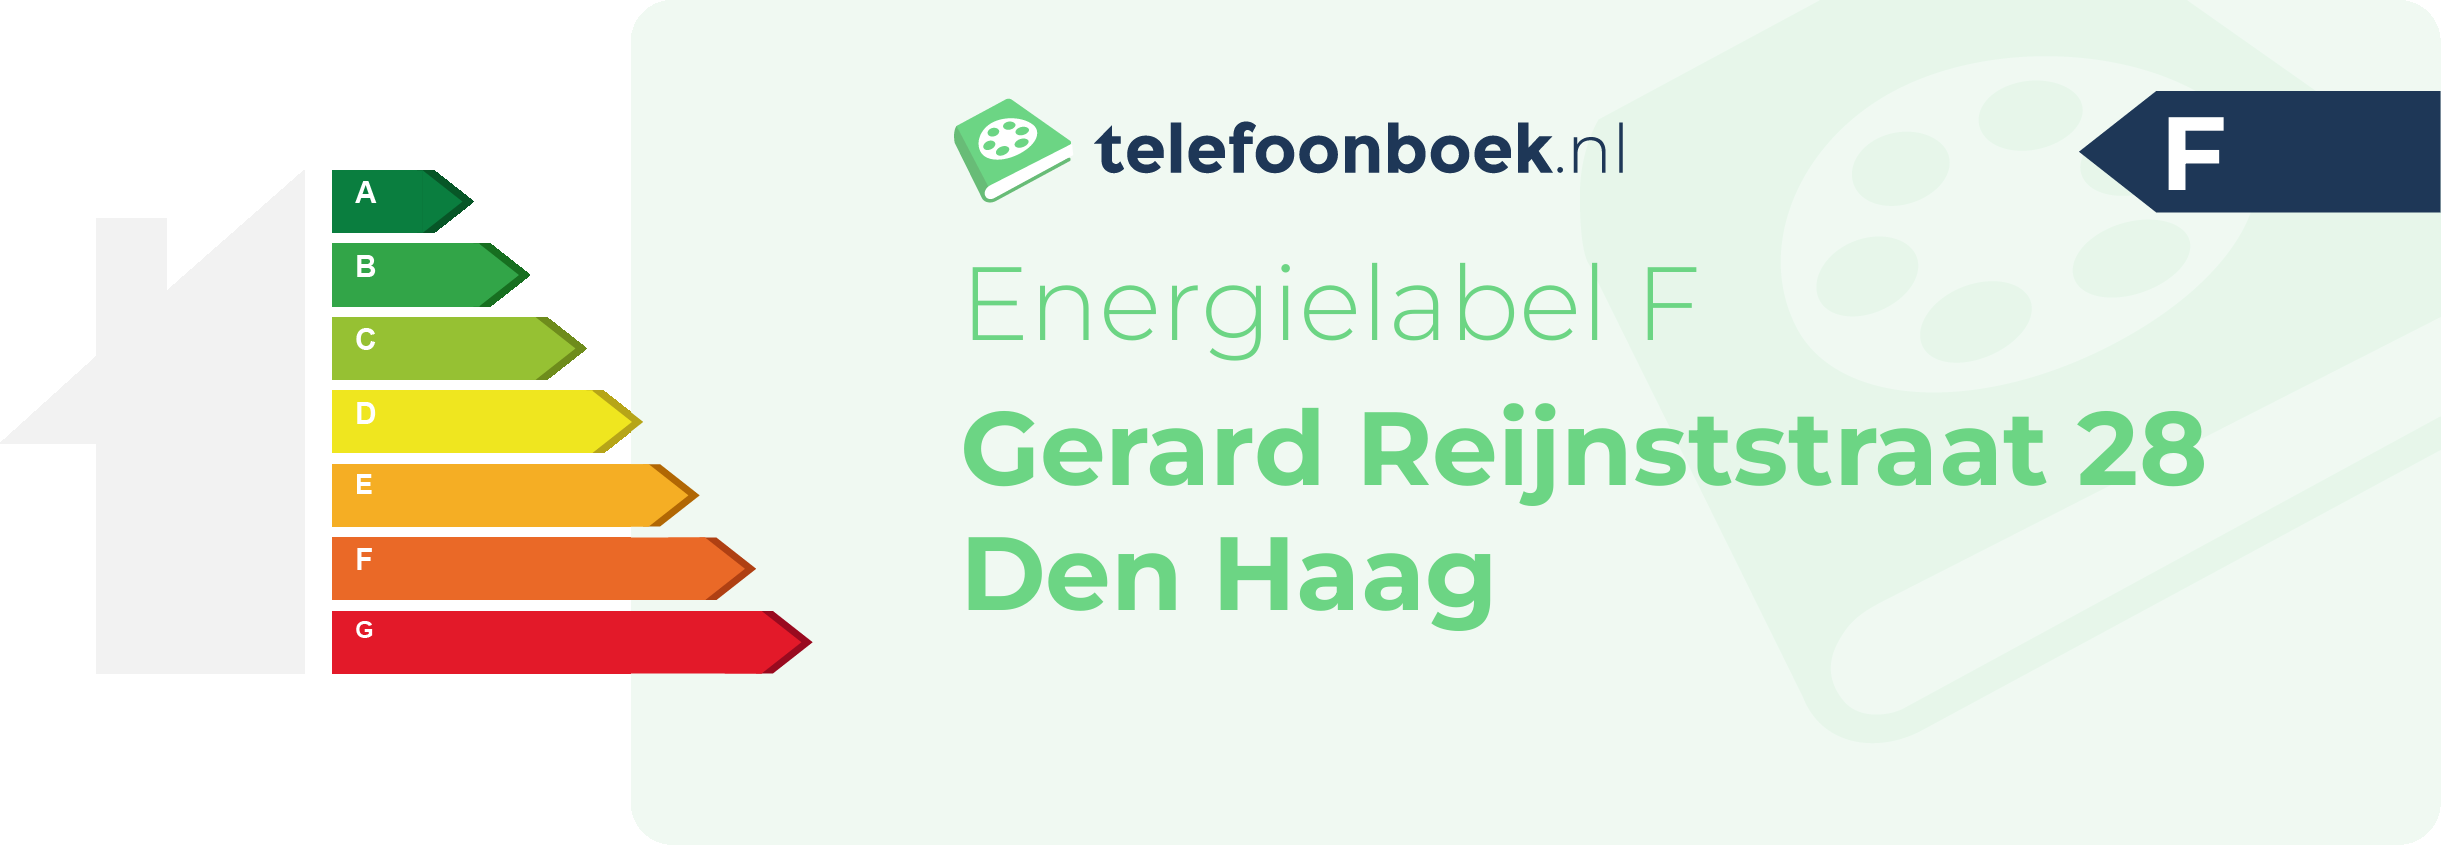 Energielabel Gerard Reijnststraat 28 Den Haag